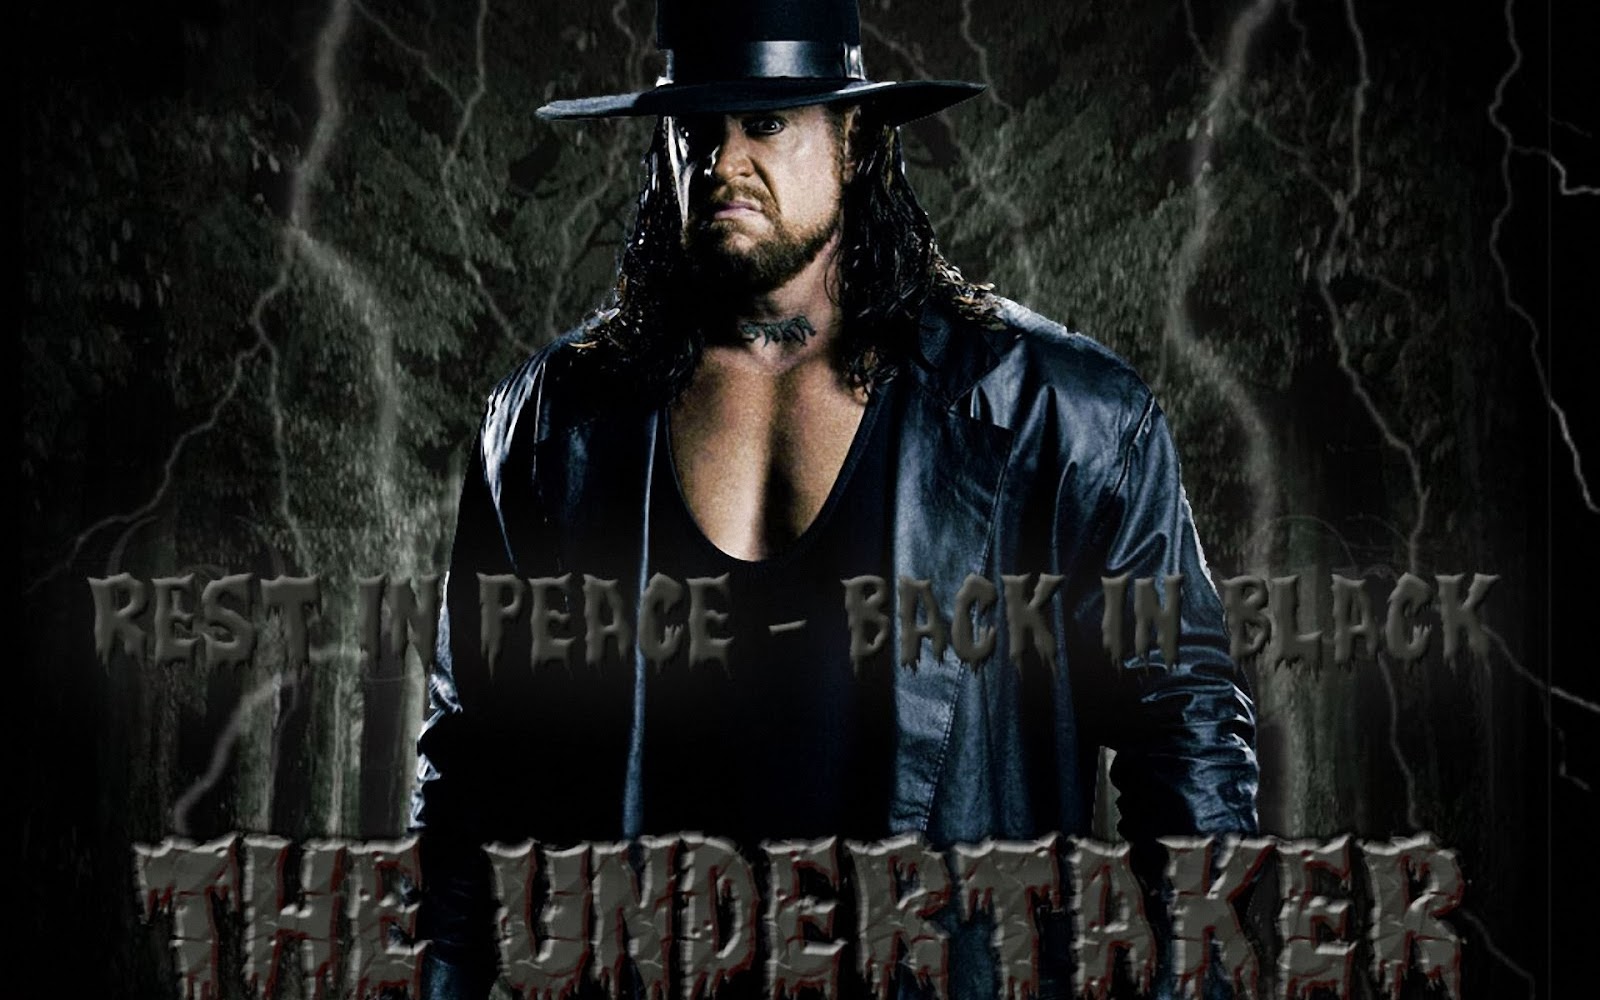 Undertaker HD Wallpaper Wwe